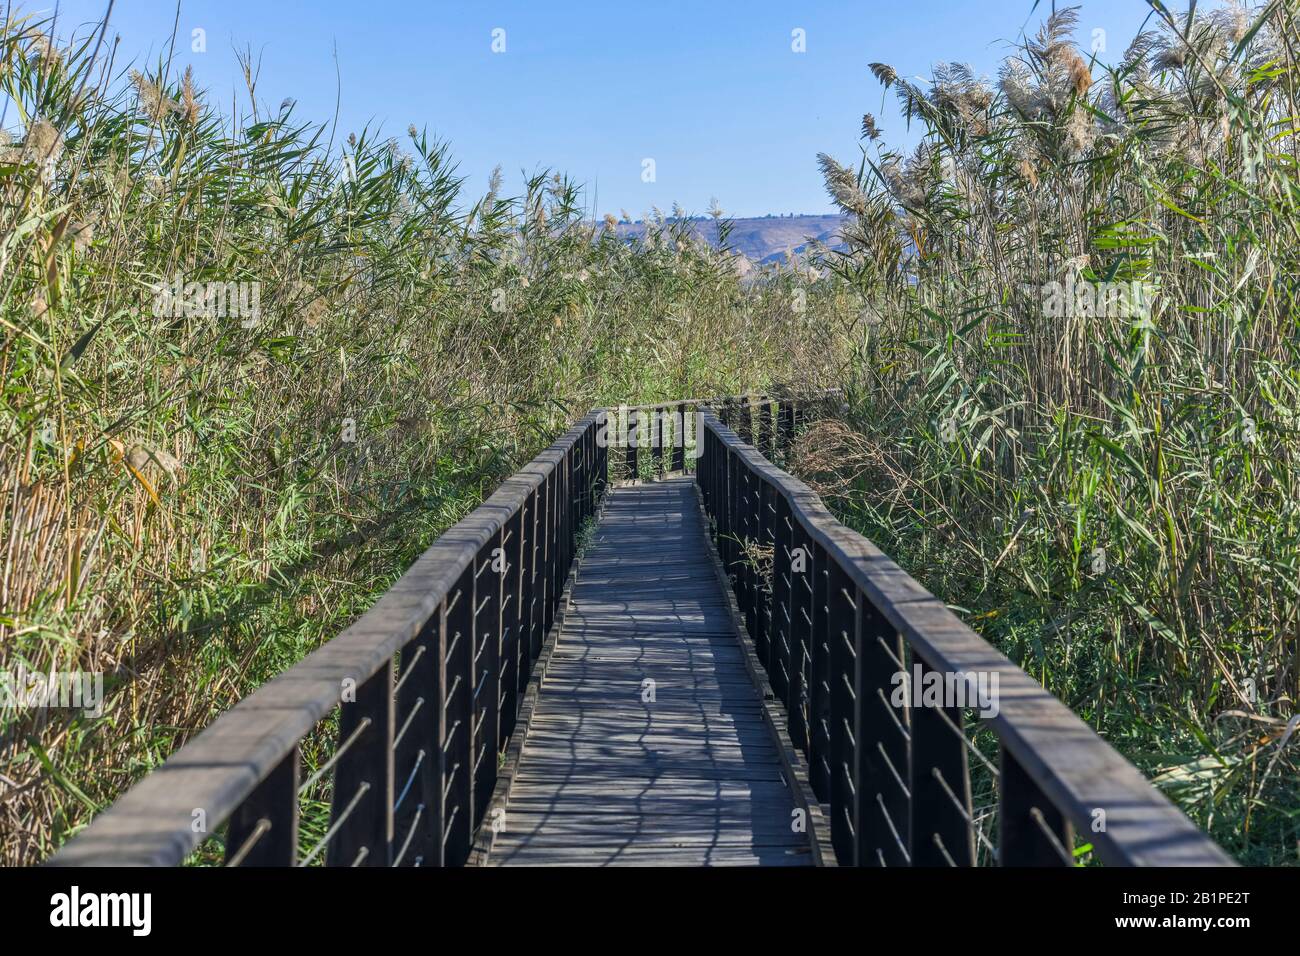 Holzstege zur Vogelbeobachtung, Naturschutzgebiet Hula, Israel Stock Photo